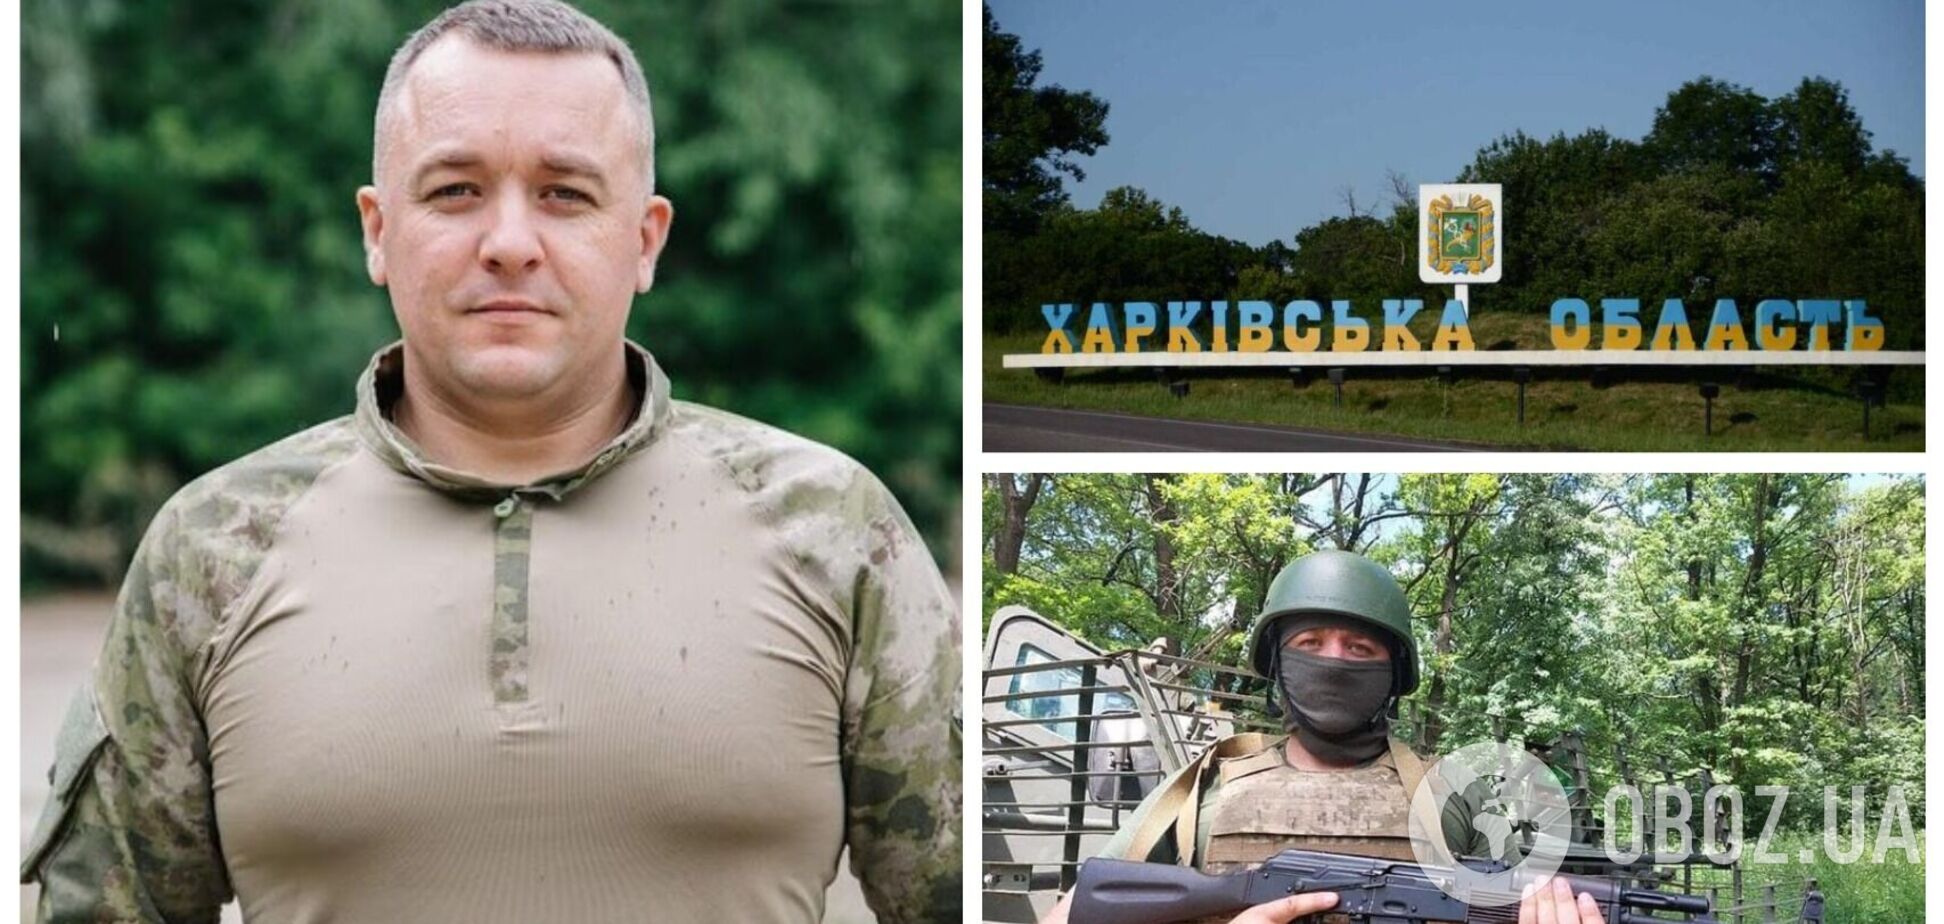 'Заради її майбутнього я тут': викладач вишу розповів, чому пішов воювати за Україну і як читає лекції з передової